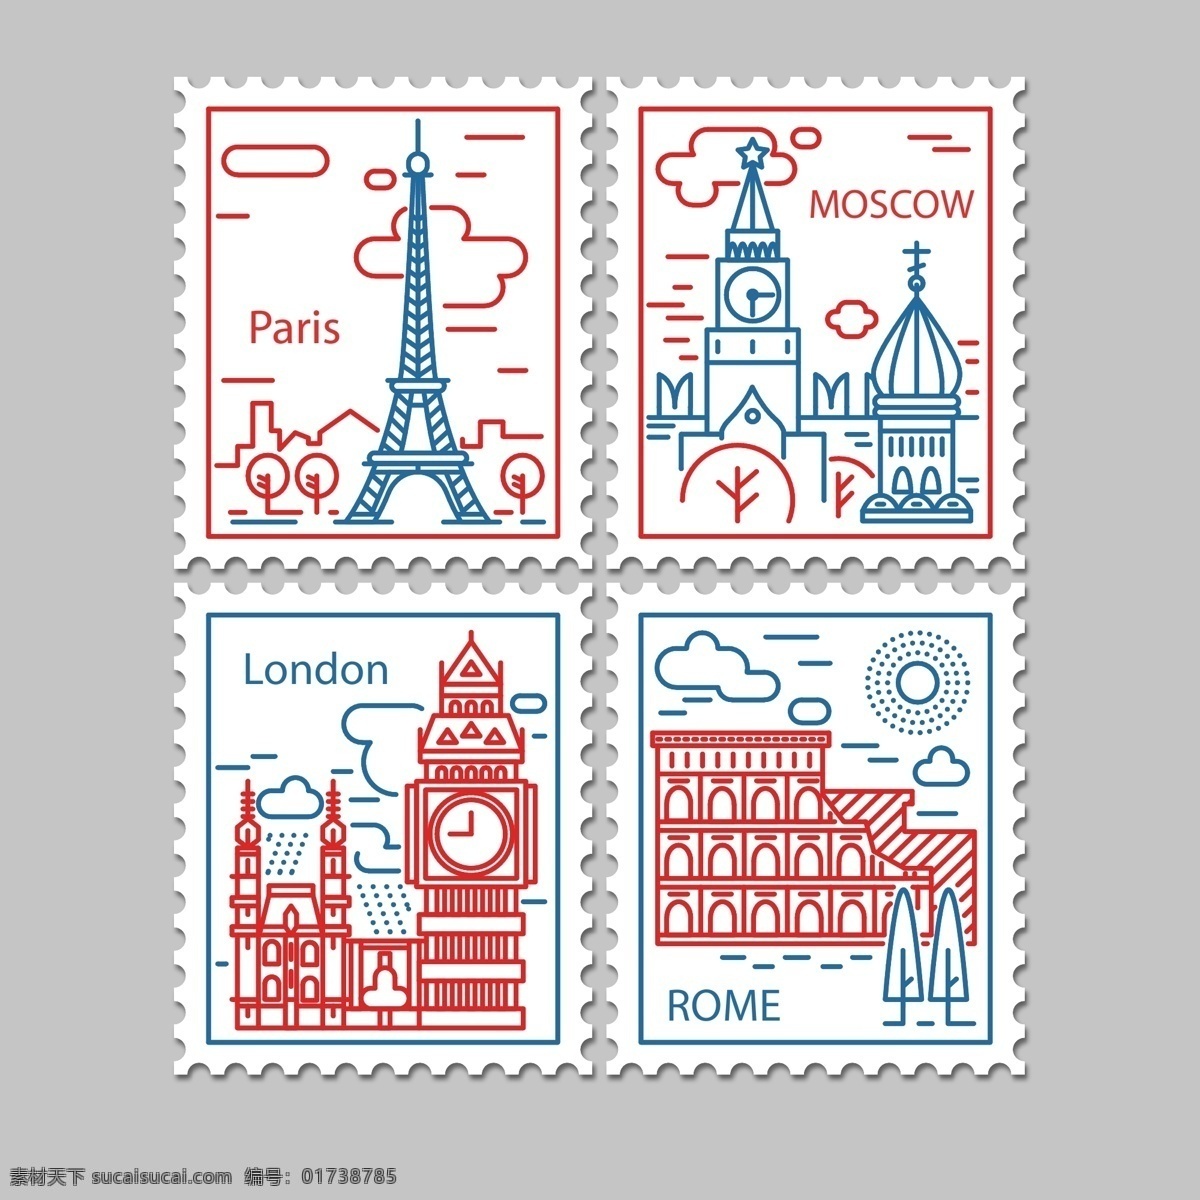 创意 线条 绘 建筑 插画 旅行 简约 铁塔 邮票 景点